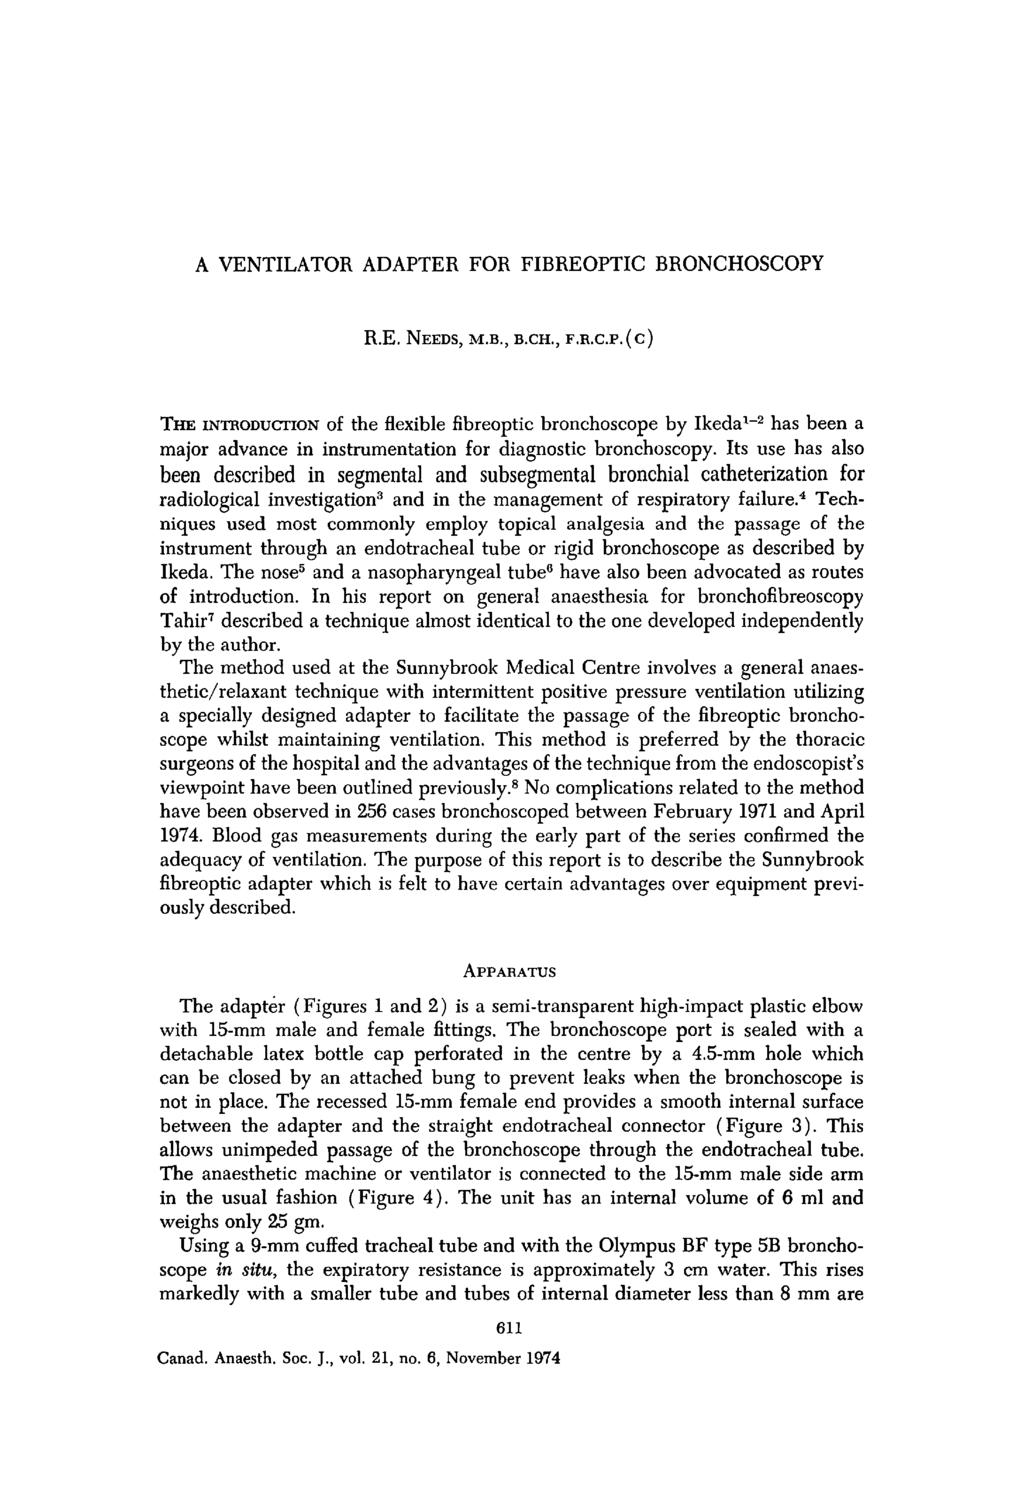 A VENTILATOR ADAPTER FOR FIBREOPTIC BRONCHOSCOPY R.E. NEEDS, M.B., B.CH., r.xa.c.p.